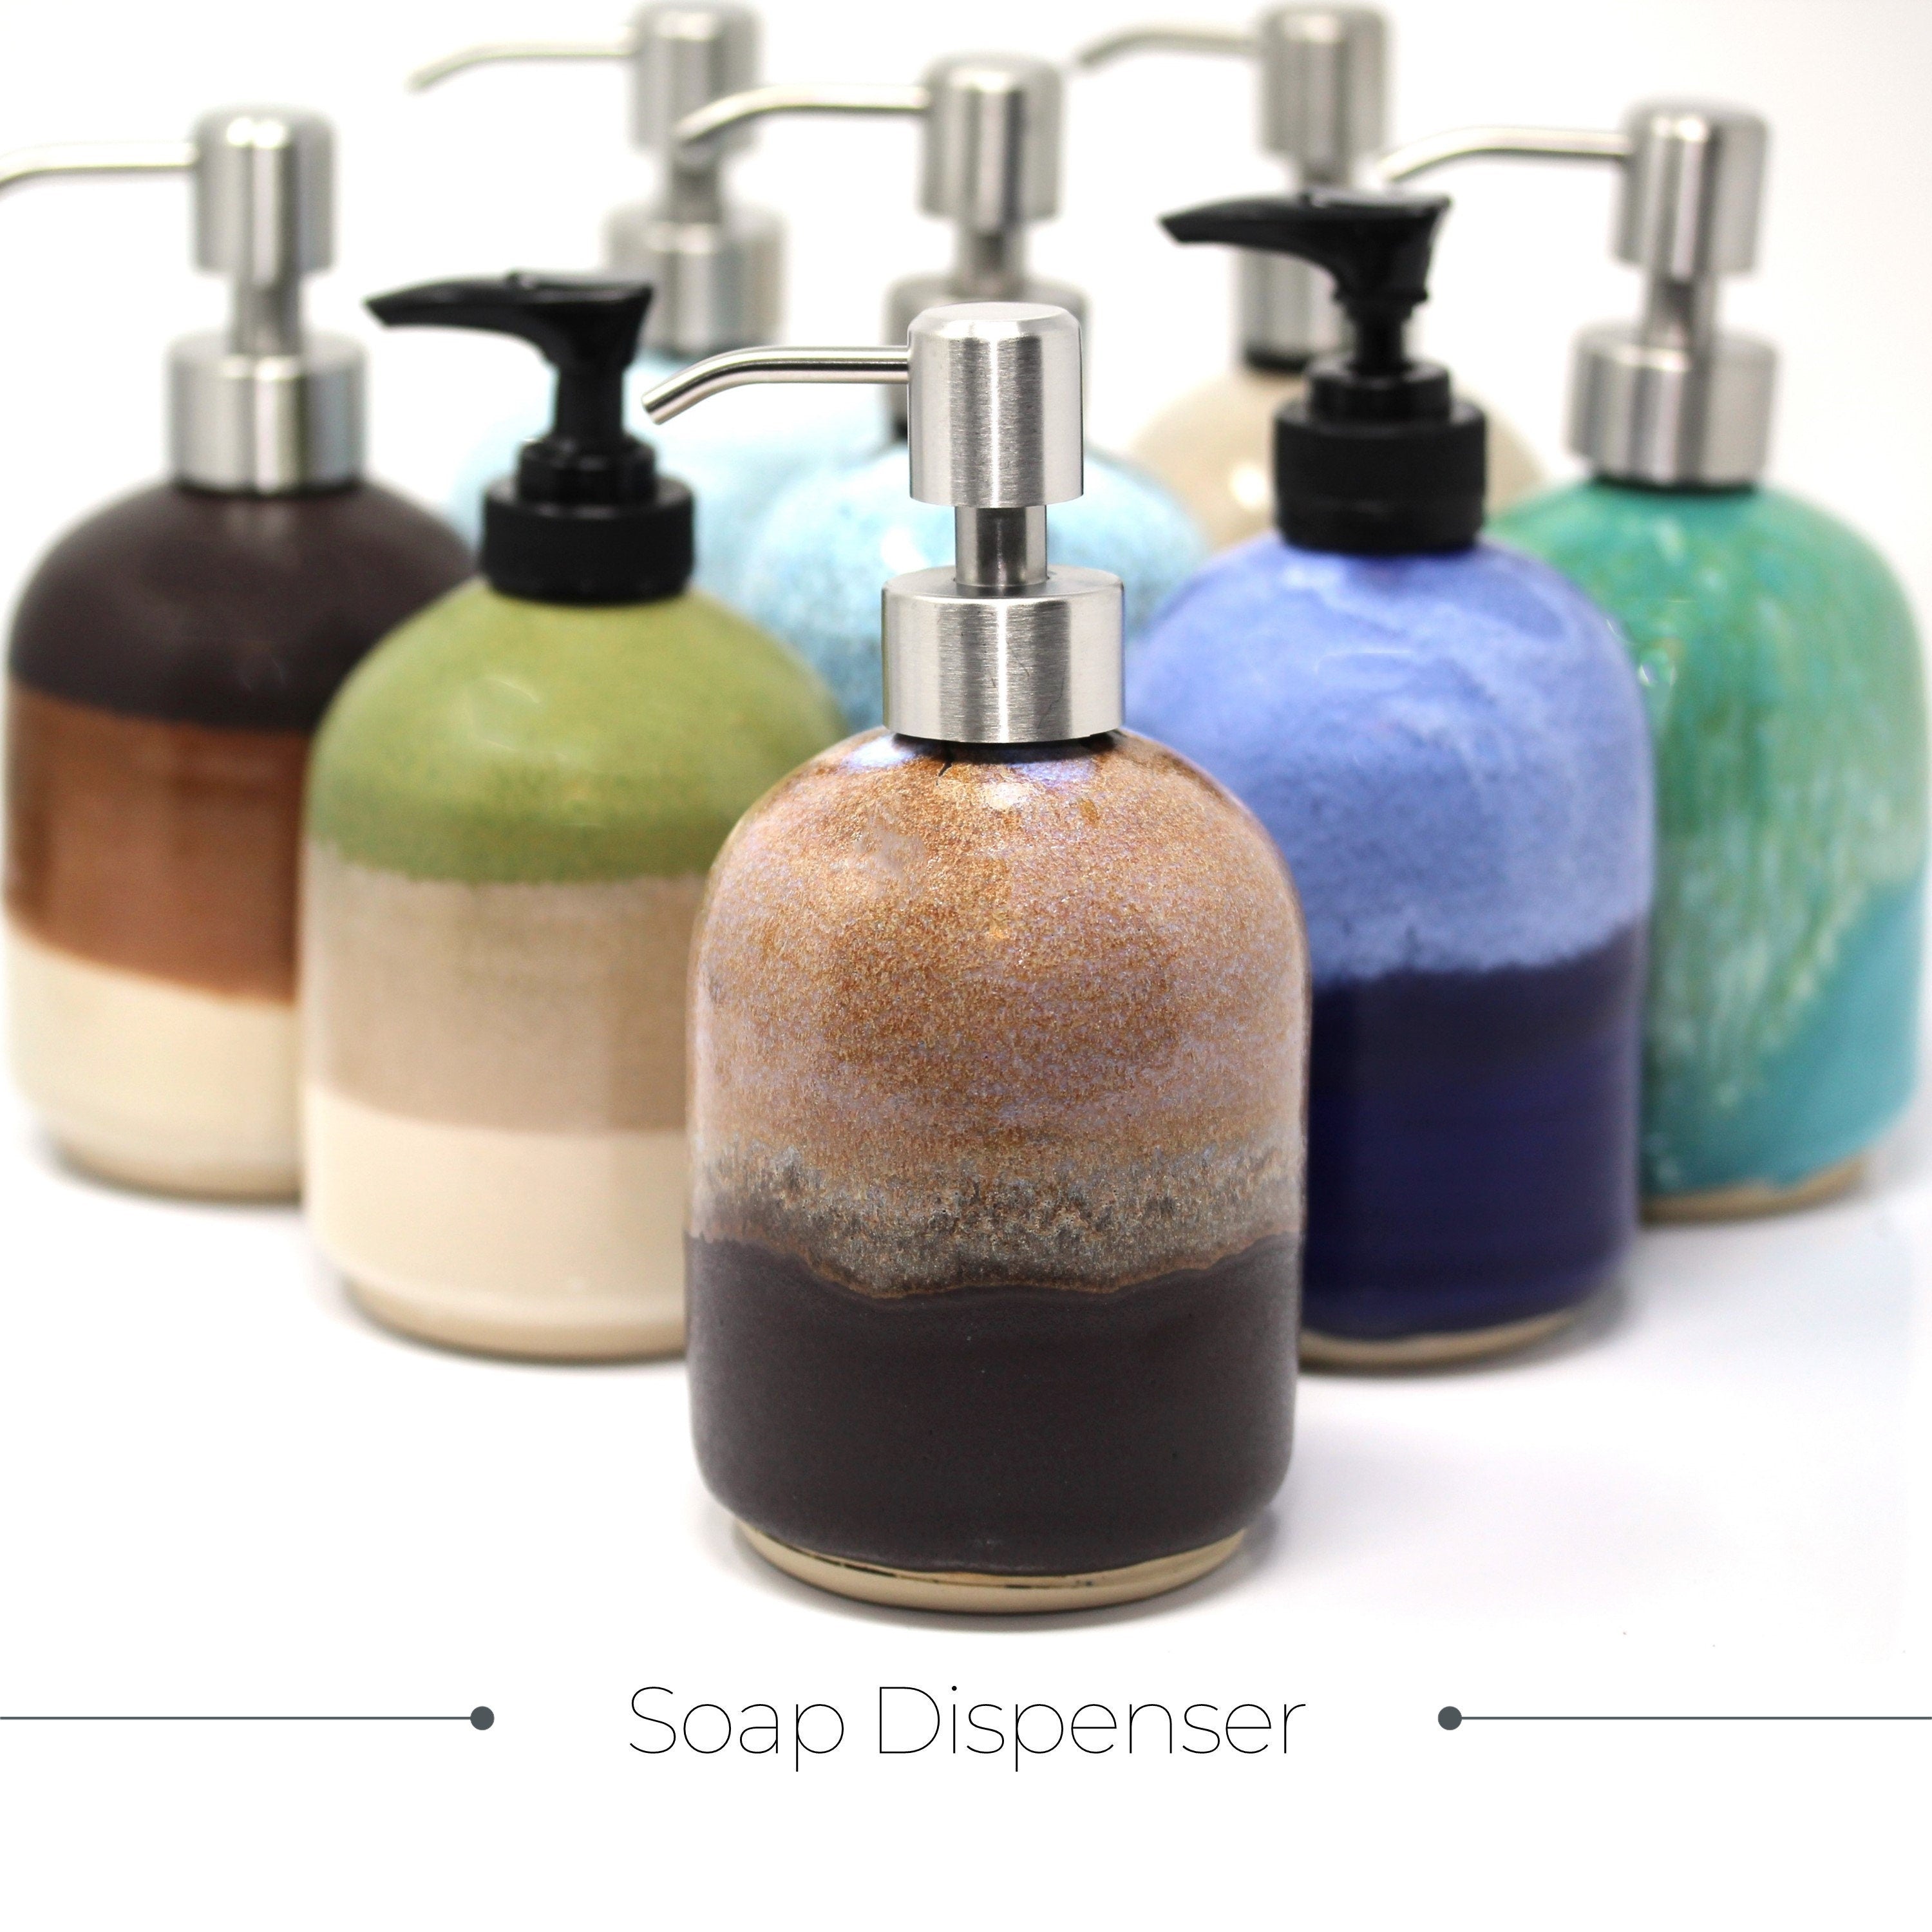 Ceramic soap dispenser